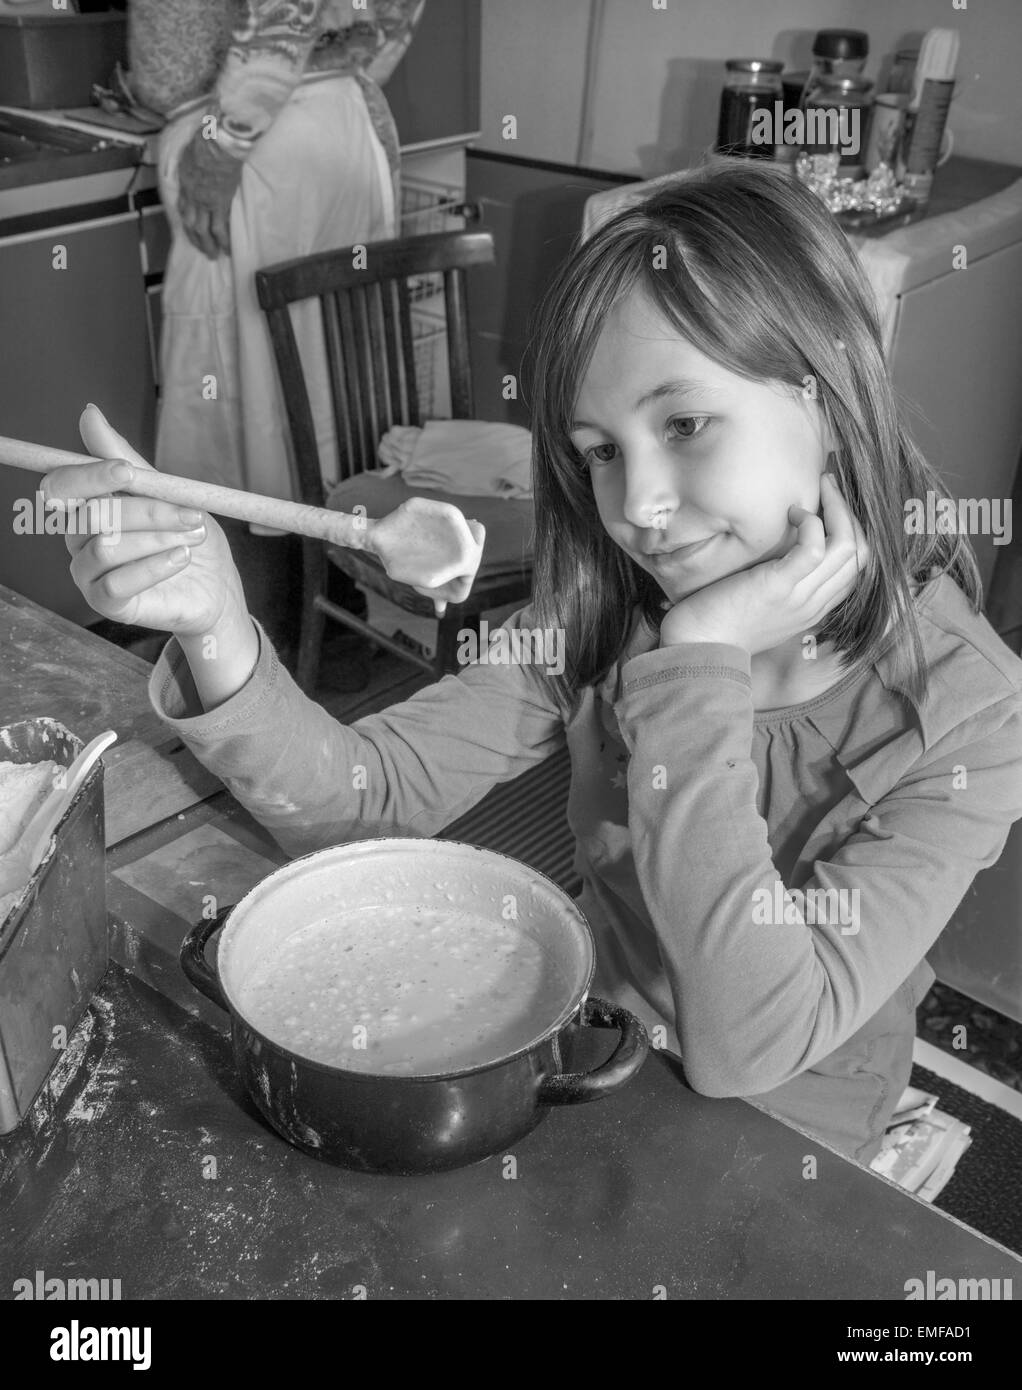 Jeune fille à la gustation unsuccess - cuisine Banque D'Images